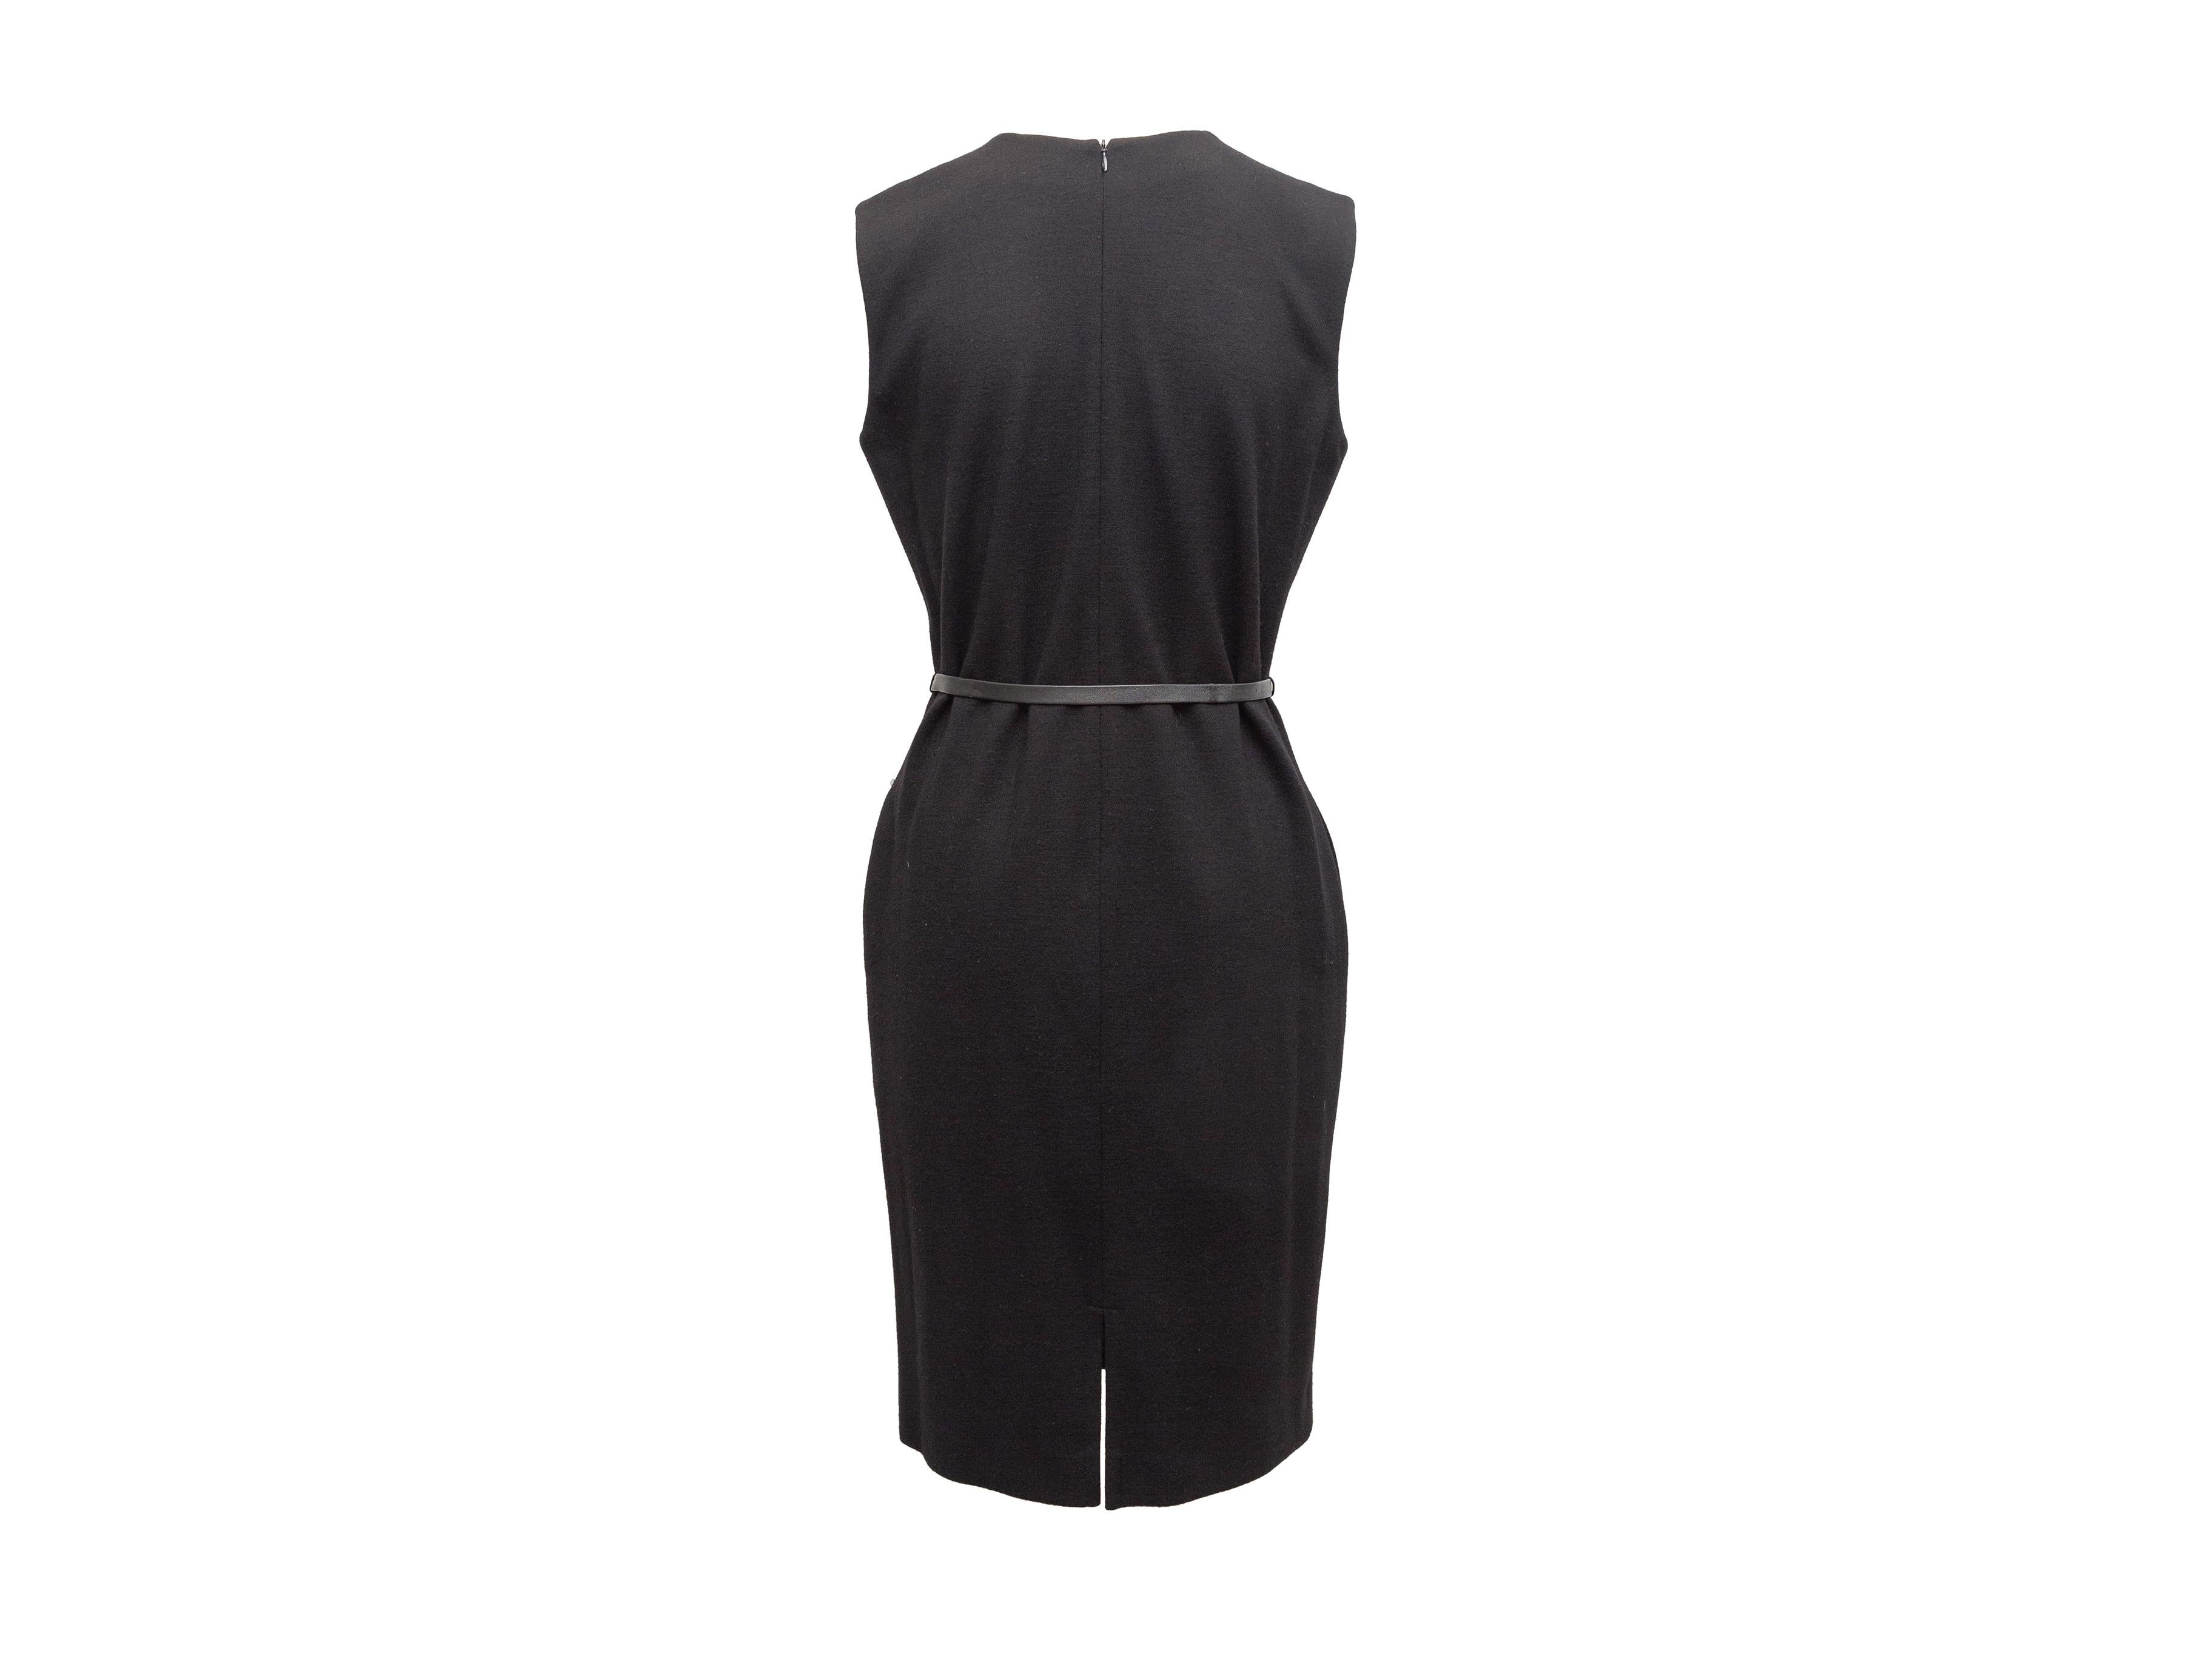 Women's Yves Saint Laurent Black Sleeveless Dress